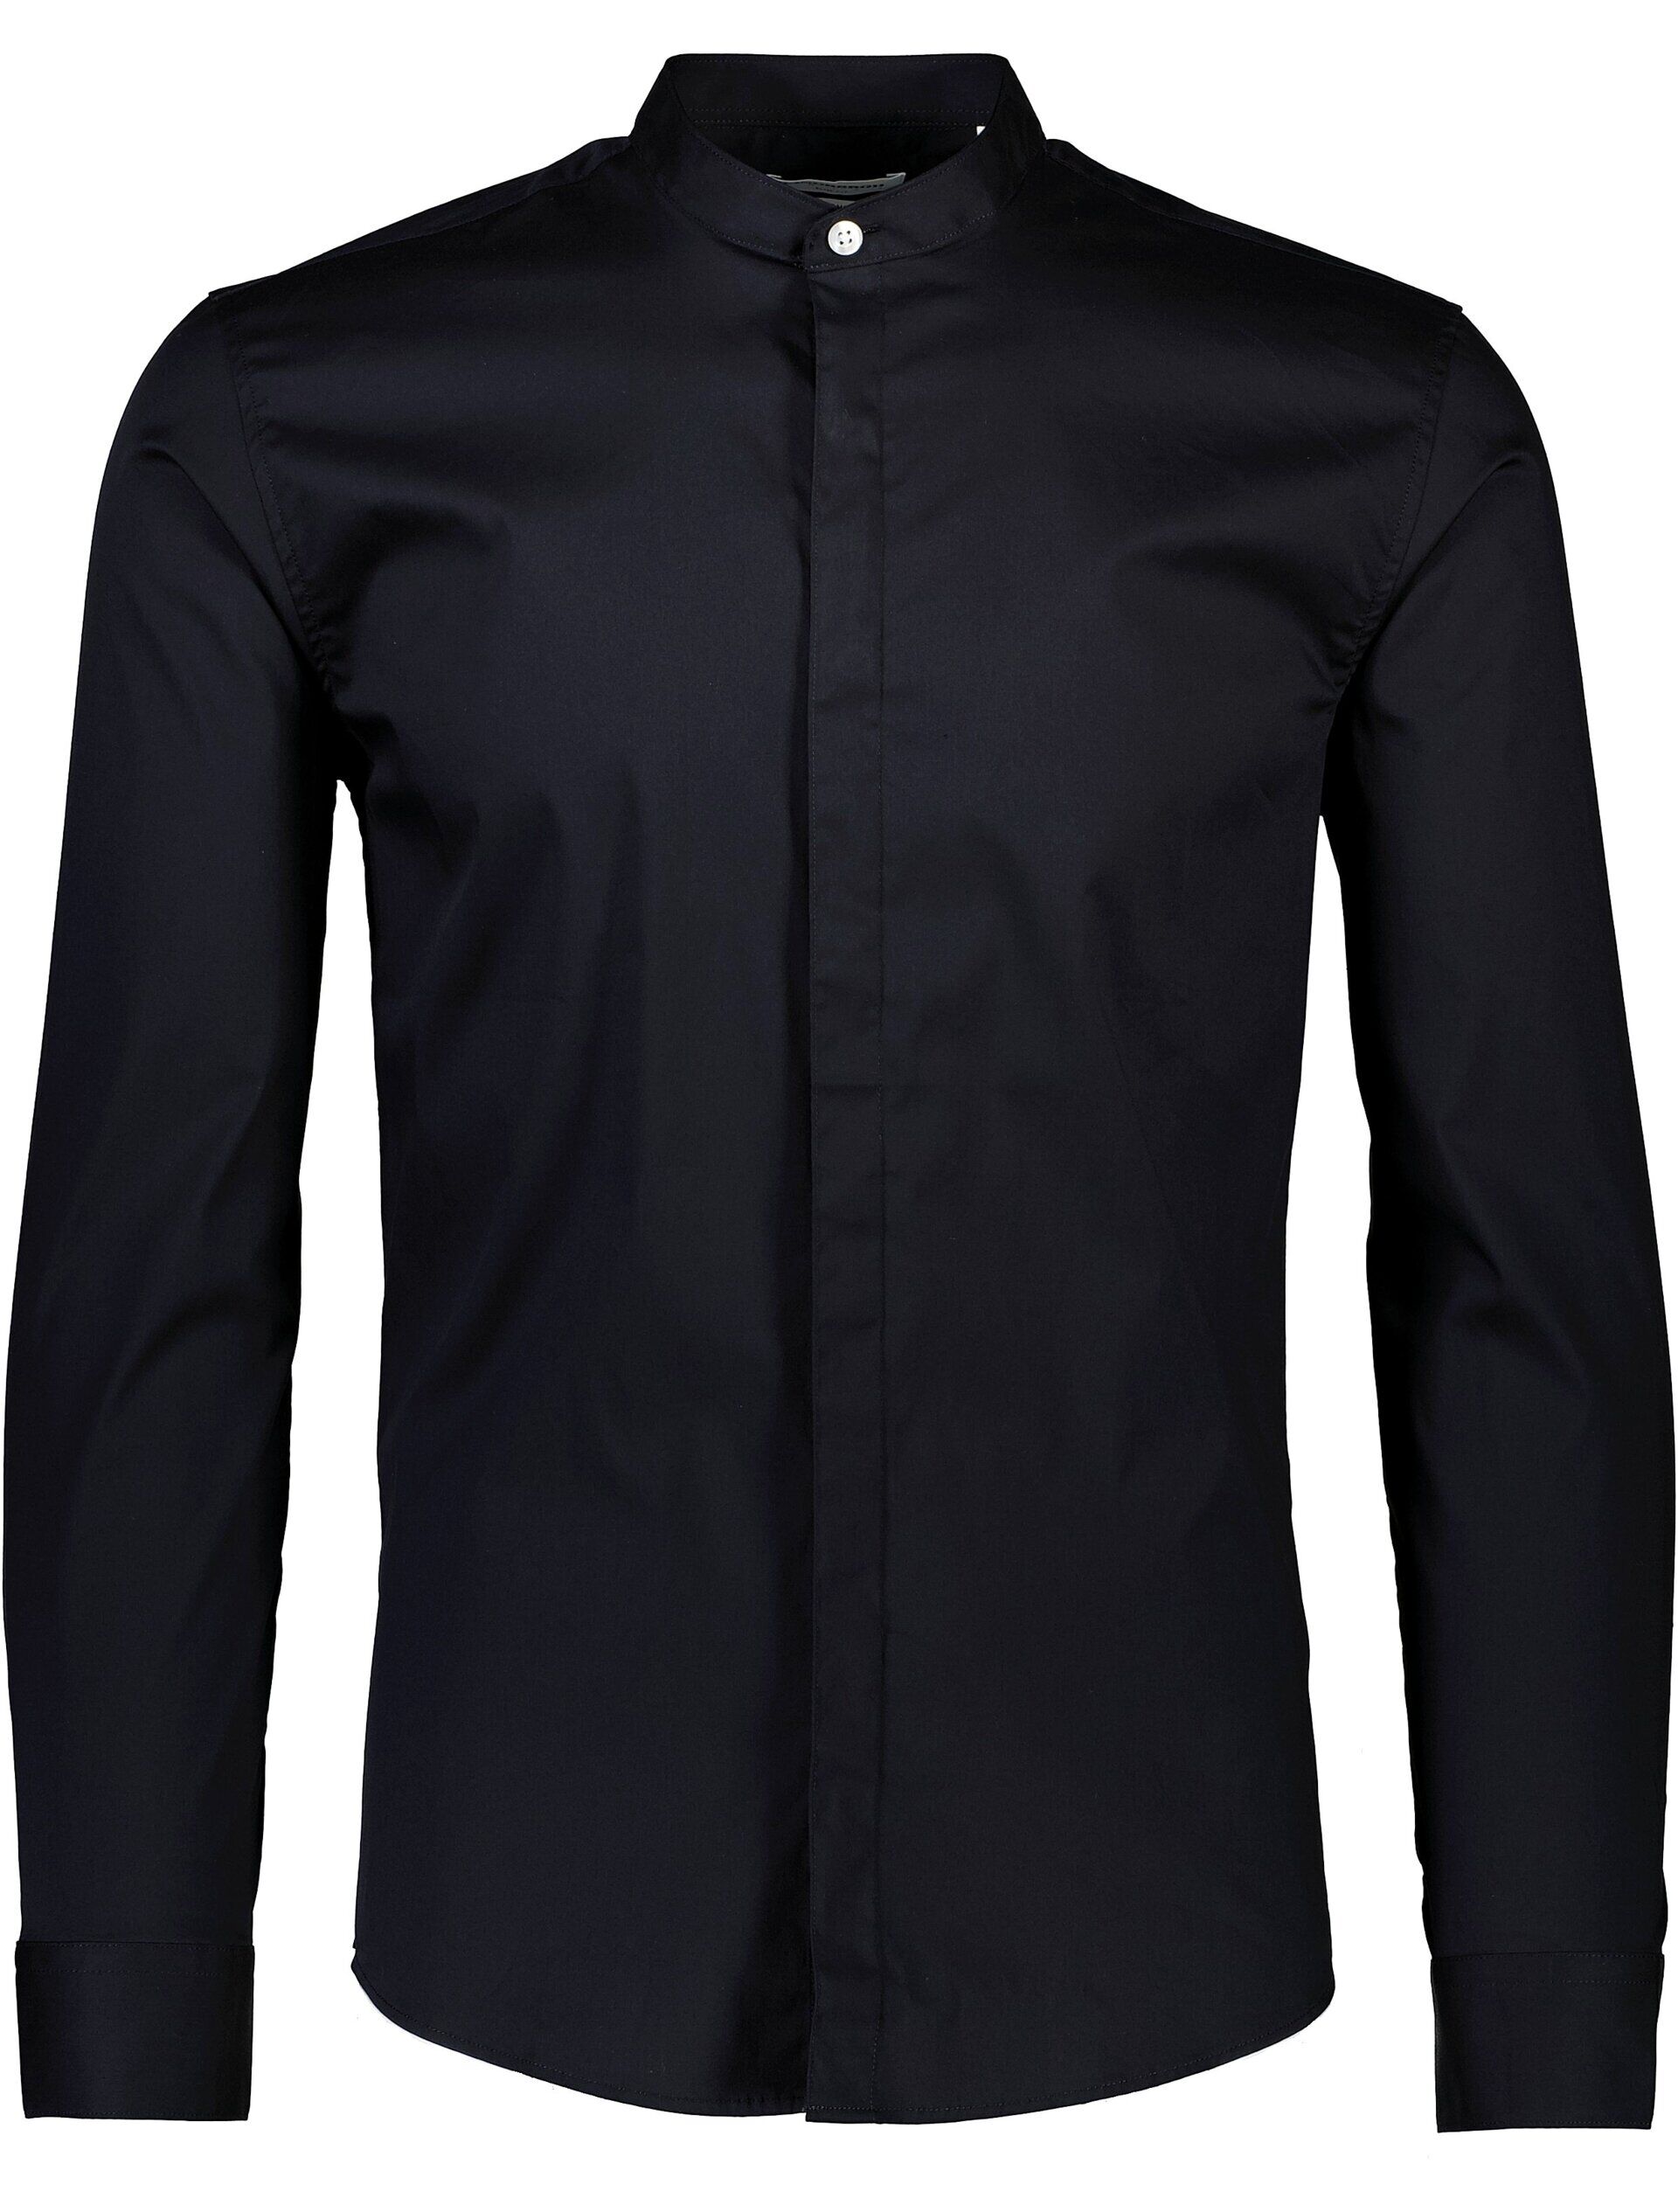 Business casual shirt Business casual shirt Black 30-203172A